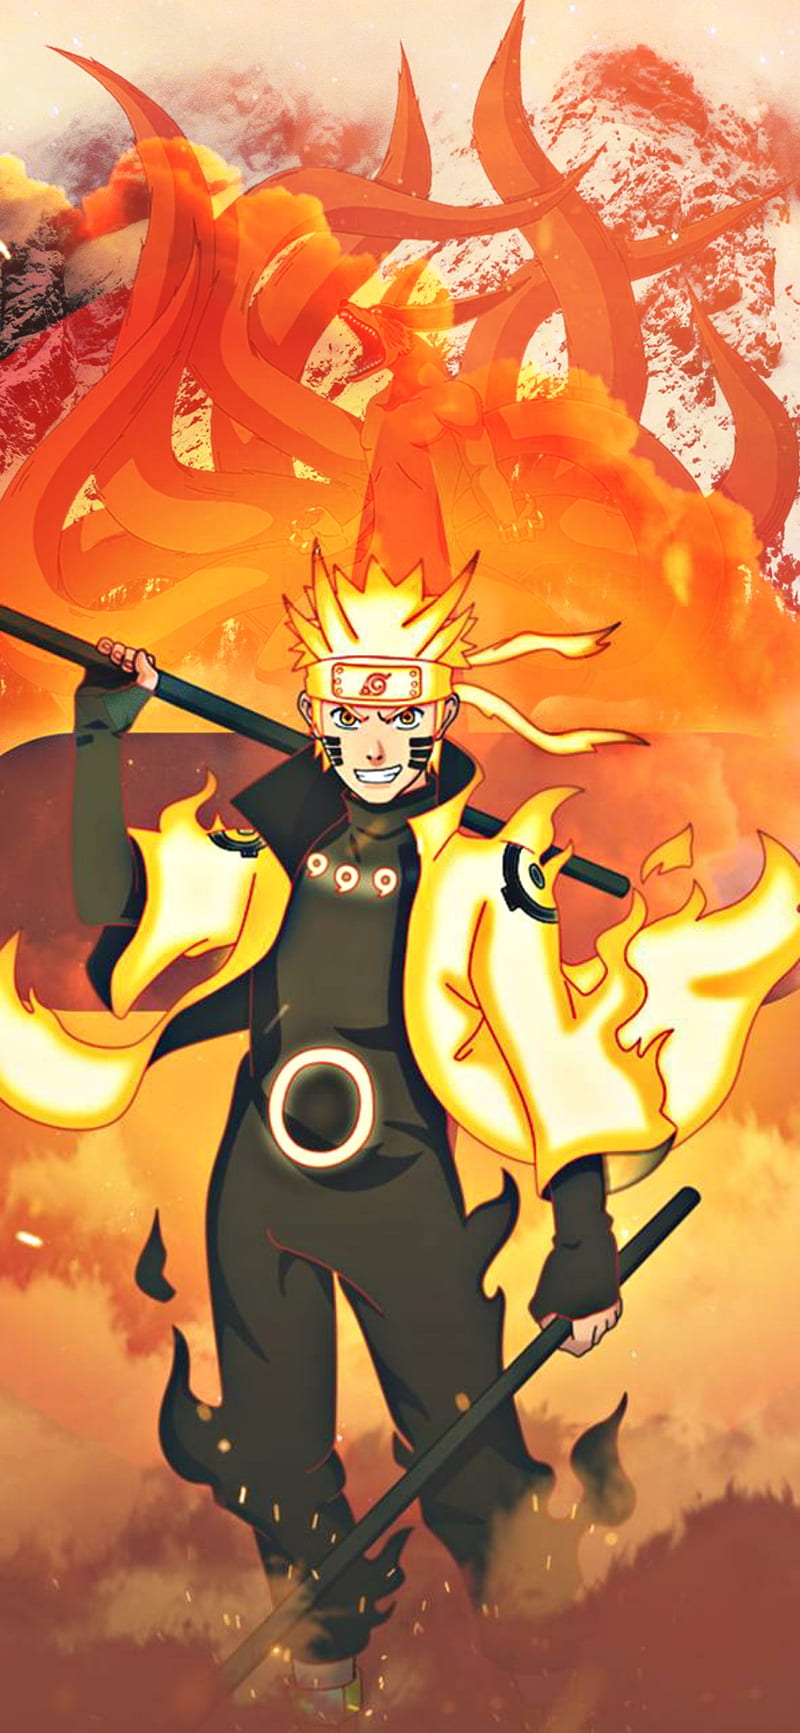 HD Naruto wallpapers là nguồn tài nguyên tuyệt vời để bạn tận dụng và làm đẹp cho chiếc điện thoại hay máy tính của mình. Các hình nền Naruto sắc nét, chất lượng cao sẽ mang đến cho bạn một trải nghiệm tuyệt vời khi sử dụng thiết bị của mình. Hãy xem hình ảnh liên quan đến HD Naruto wallpapers để tìm và tải về những hình ảnh đẹp nhất.